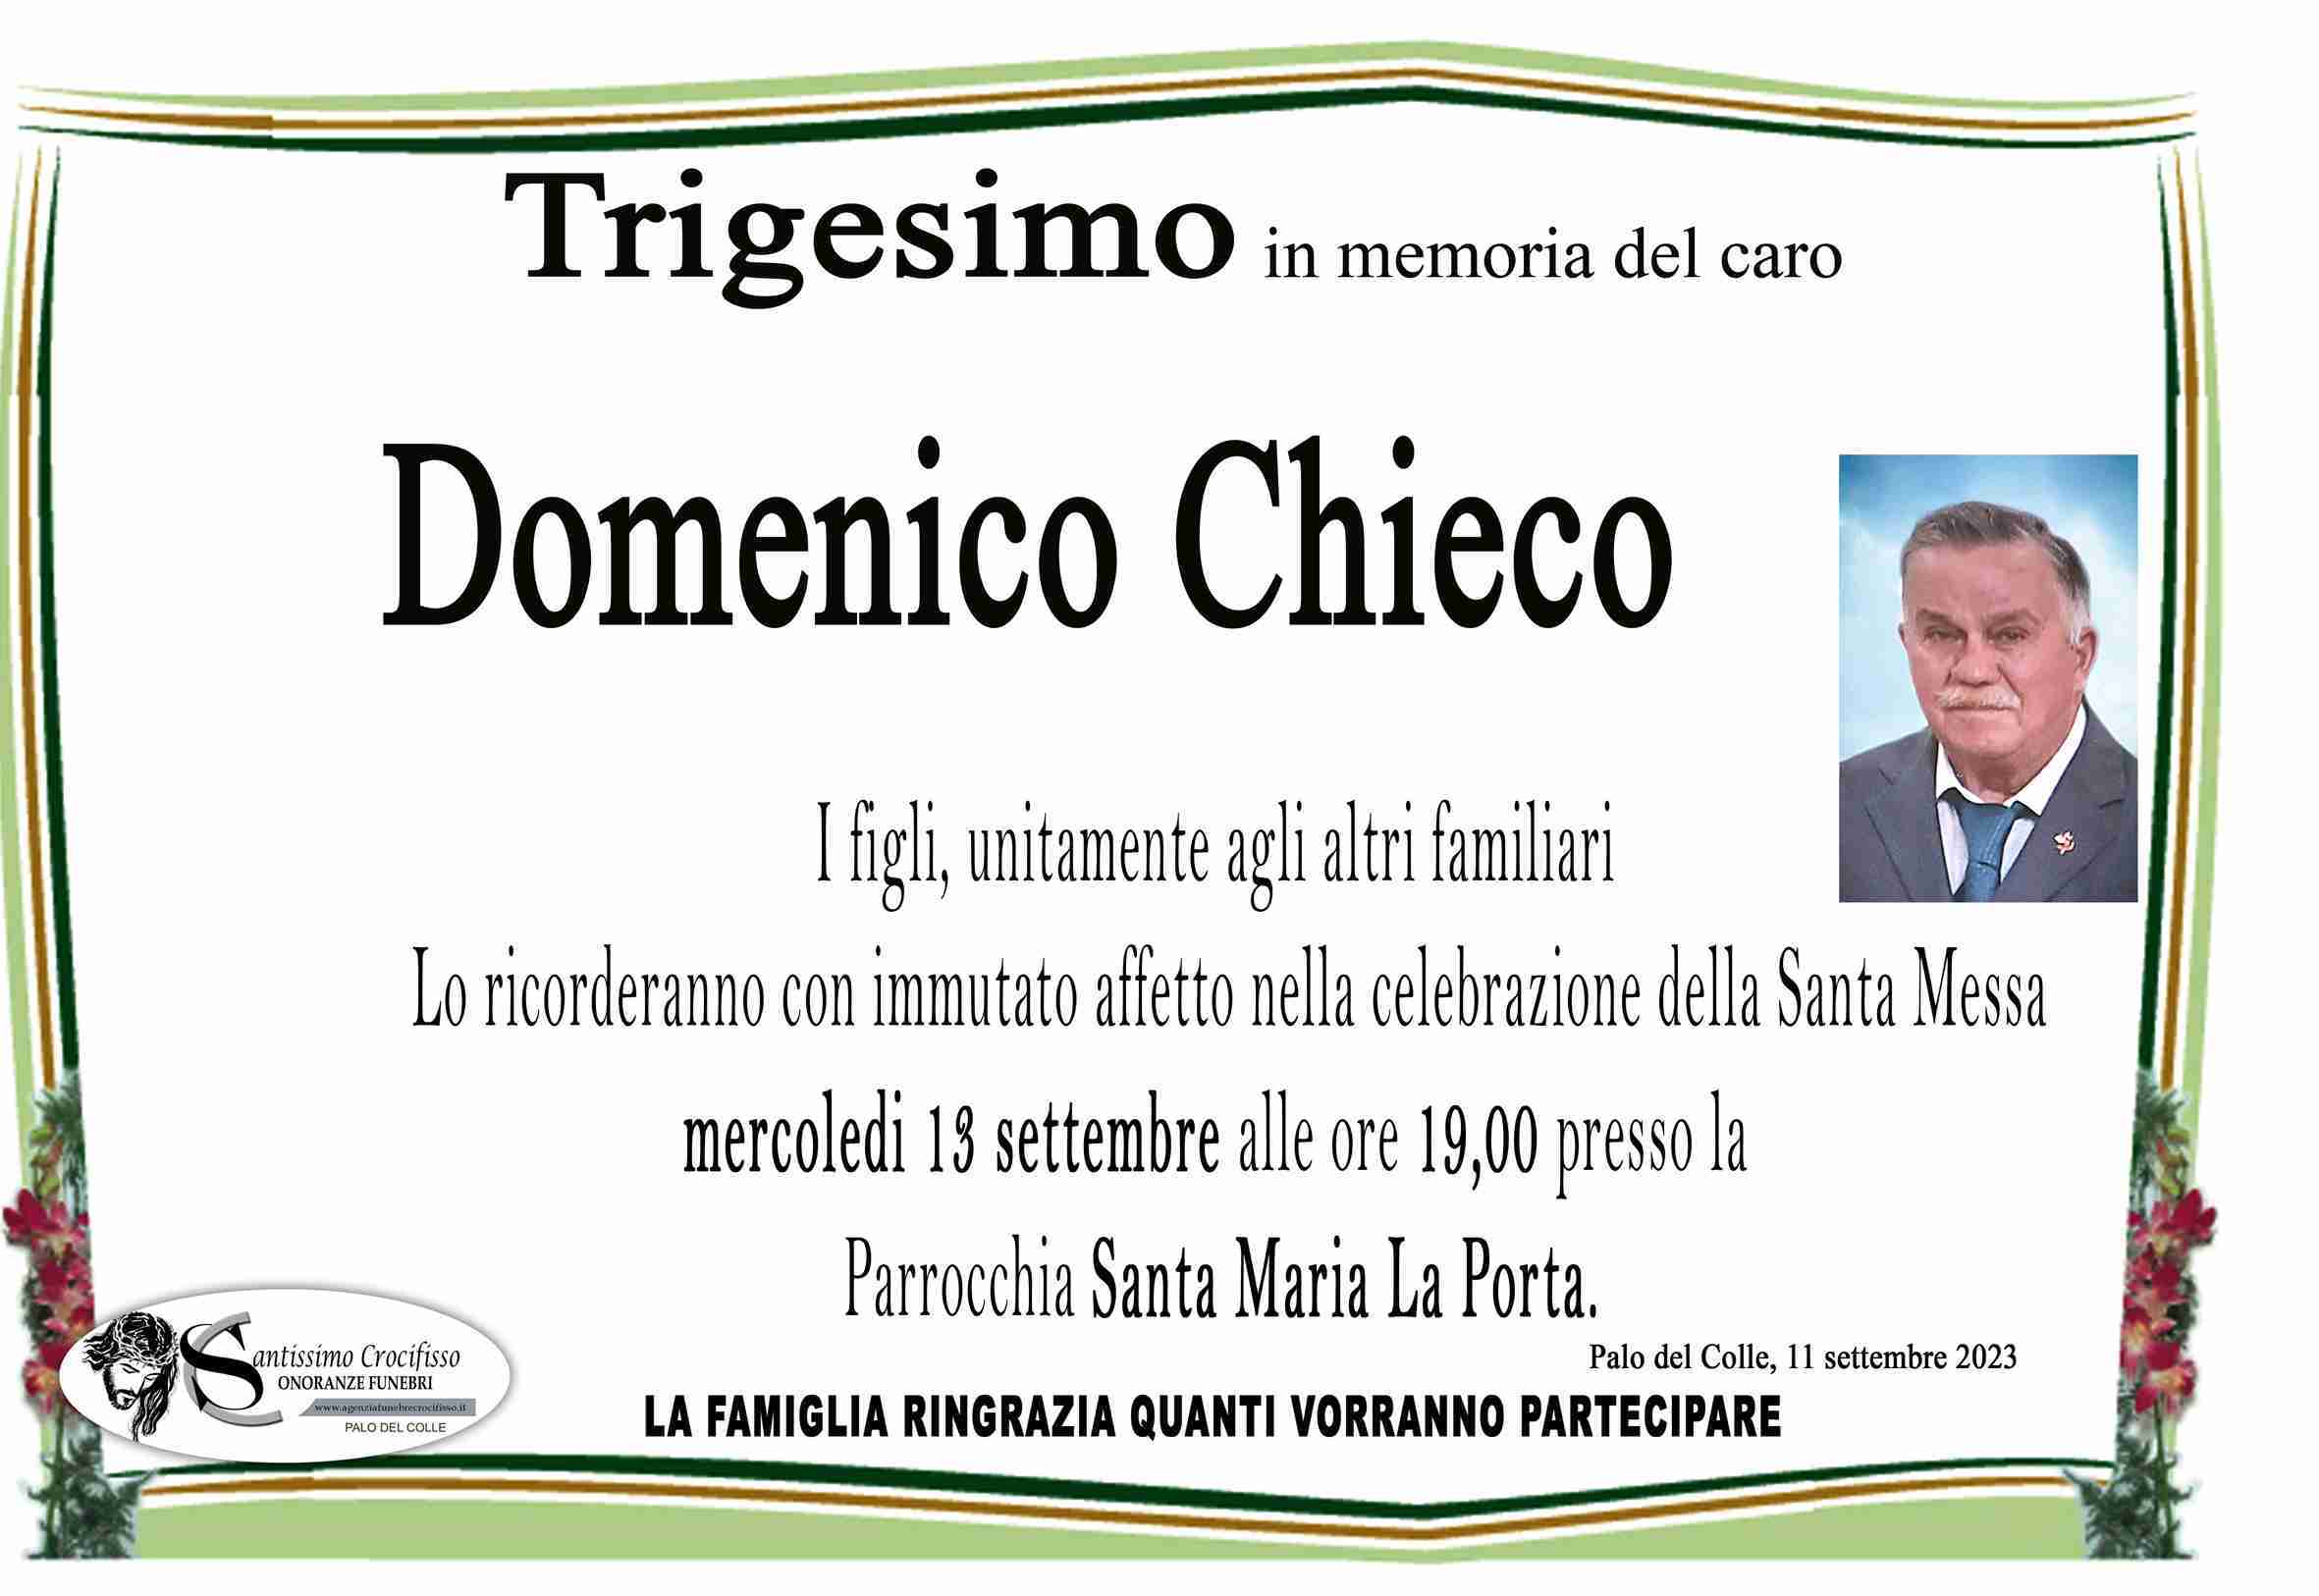 Domenico Chieco